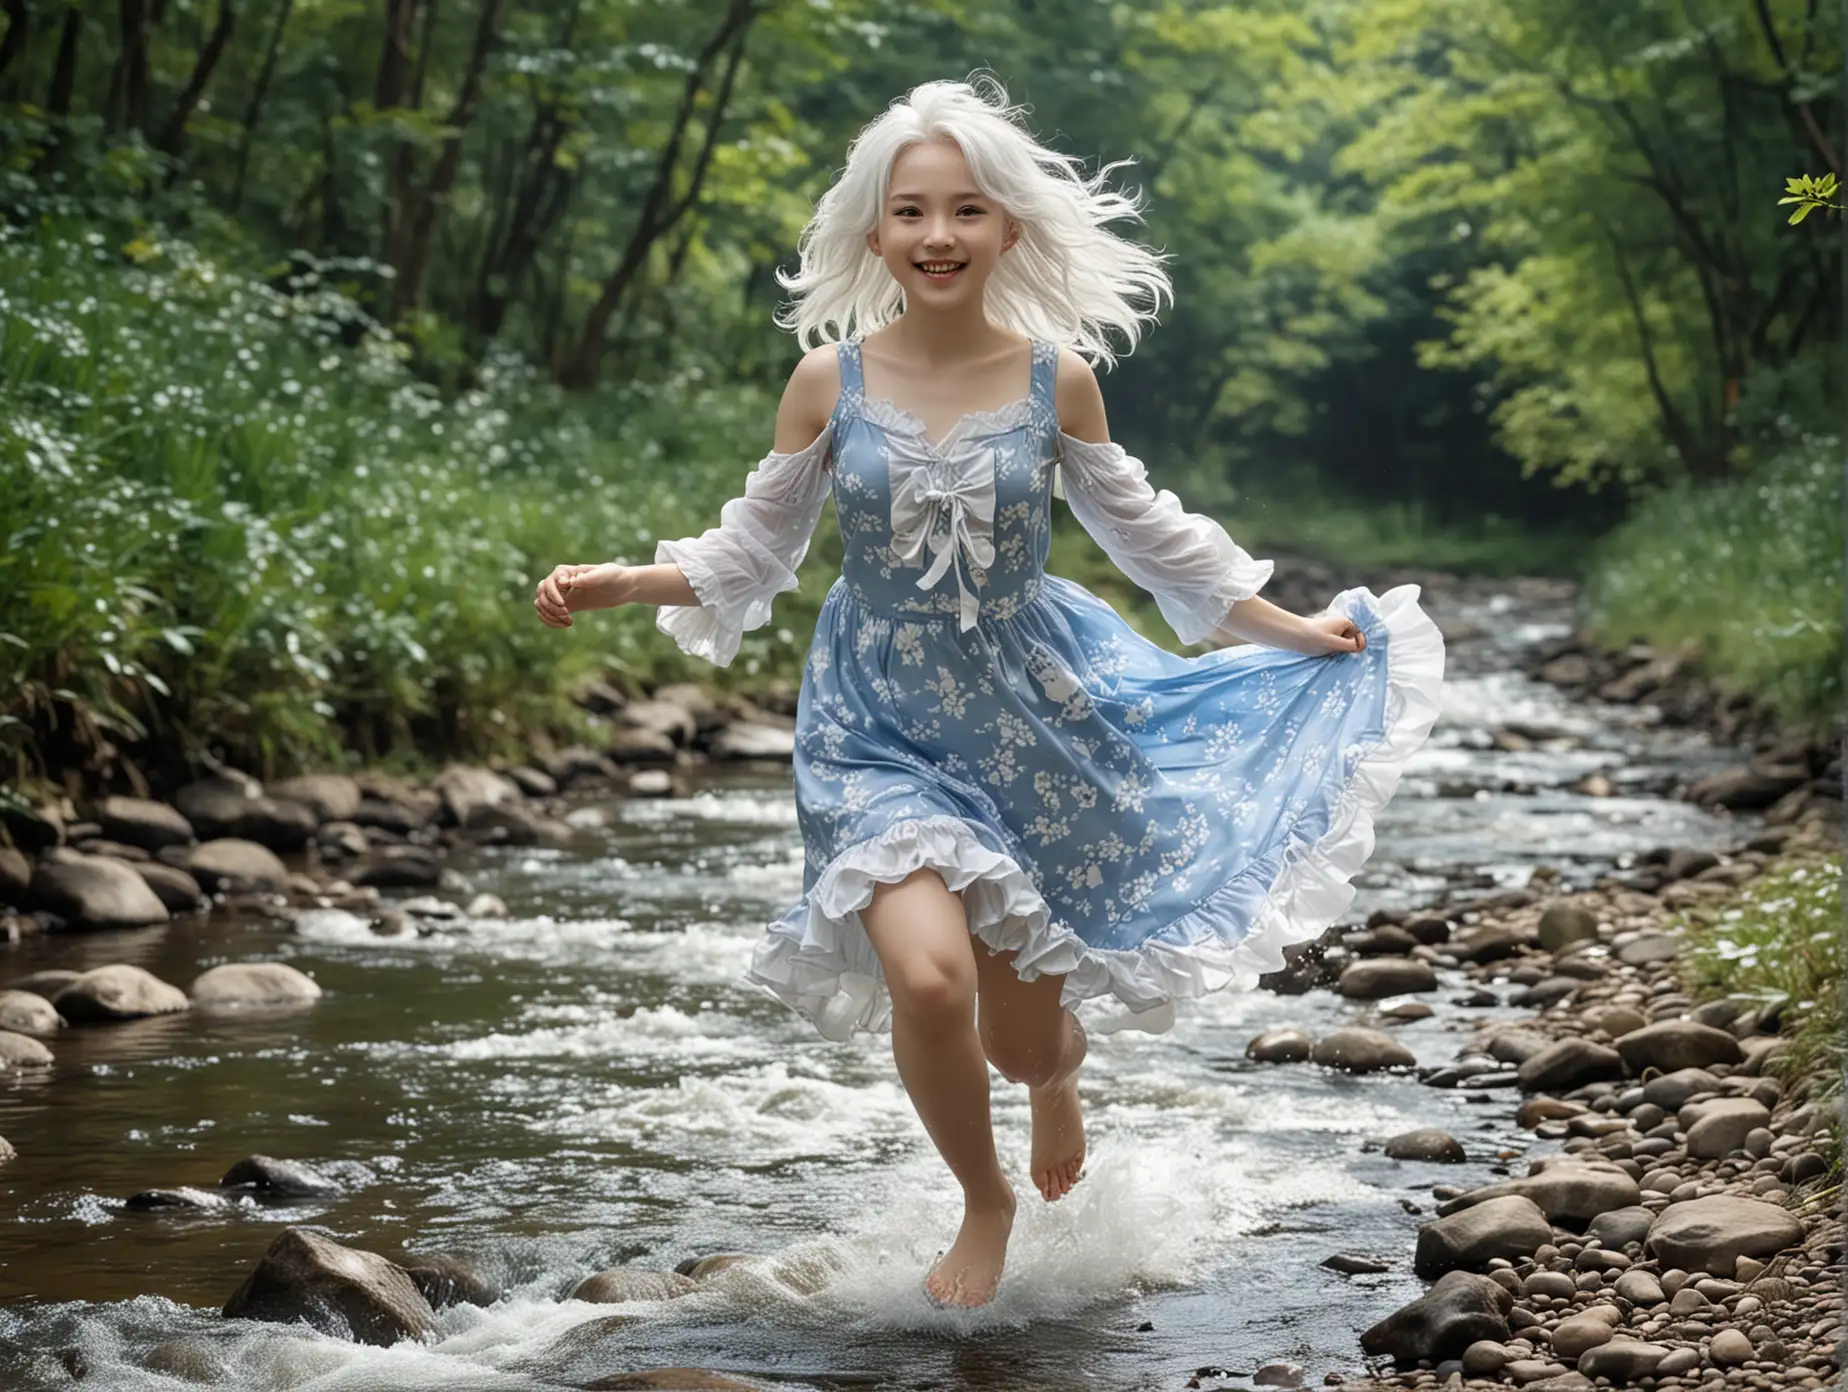 Диникилообу - богиня бегущей воды весёлая юная девочка во весь рост с пышными белыми волосами 
 в коротком бело-голубом платье бежит по берегу ручья детализированное изображение